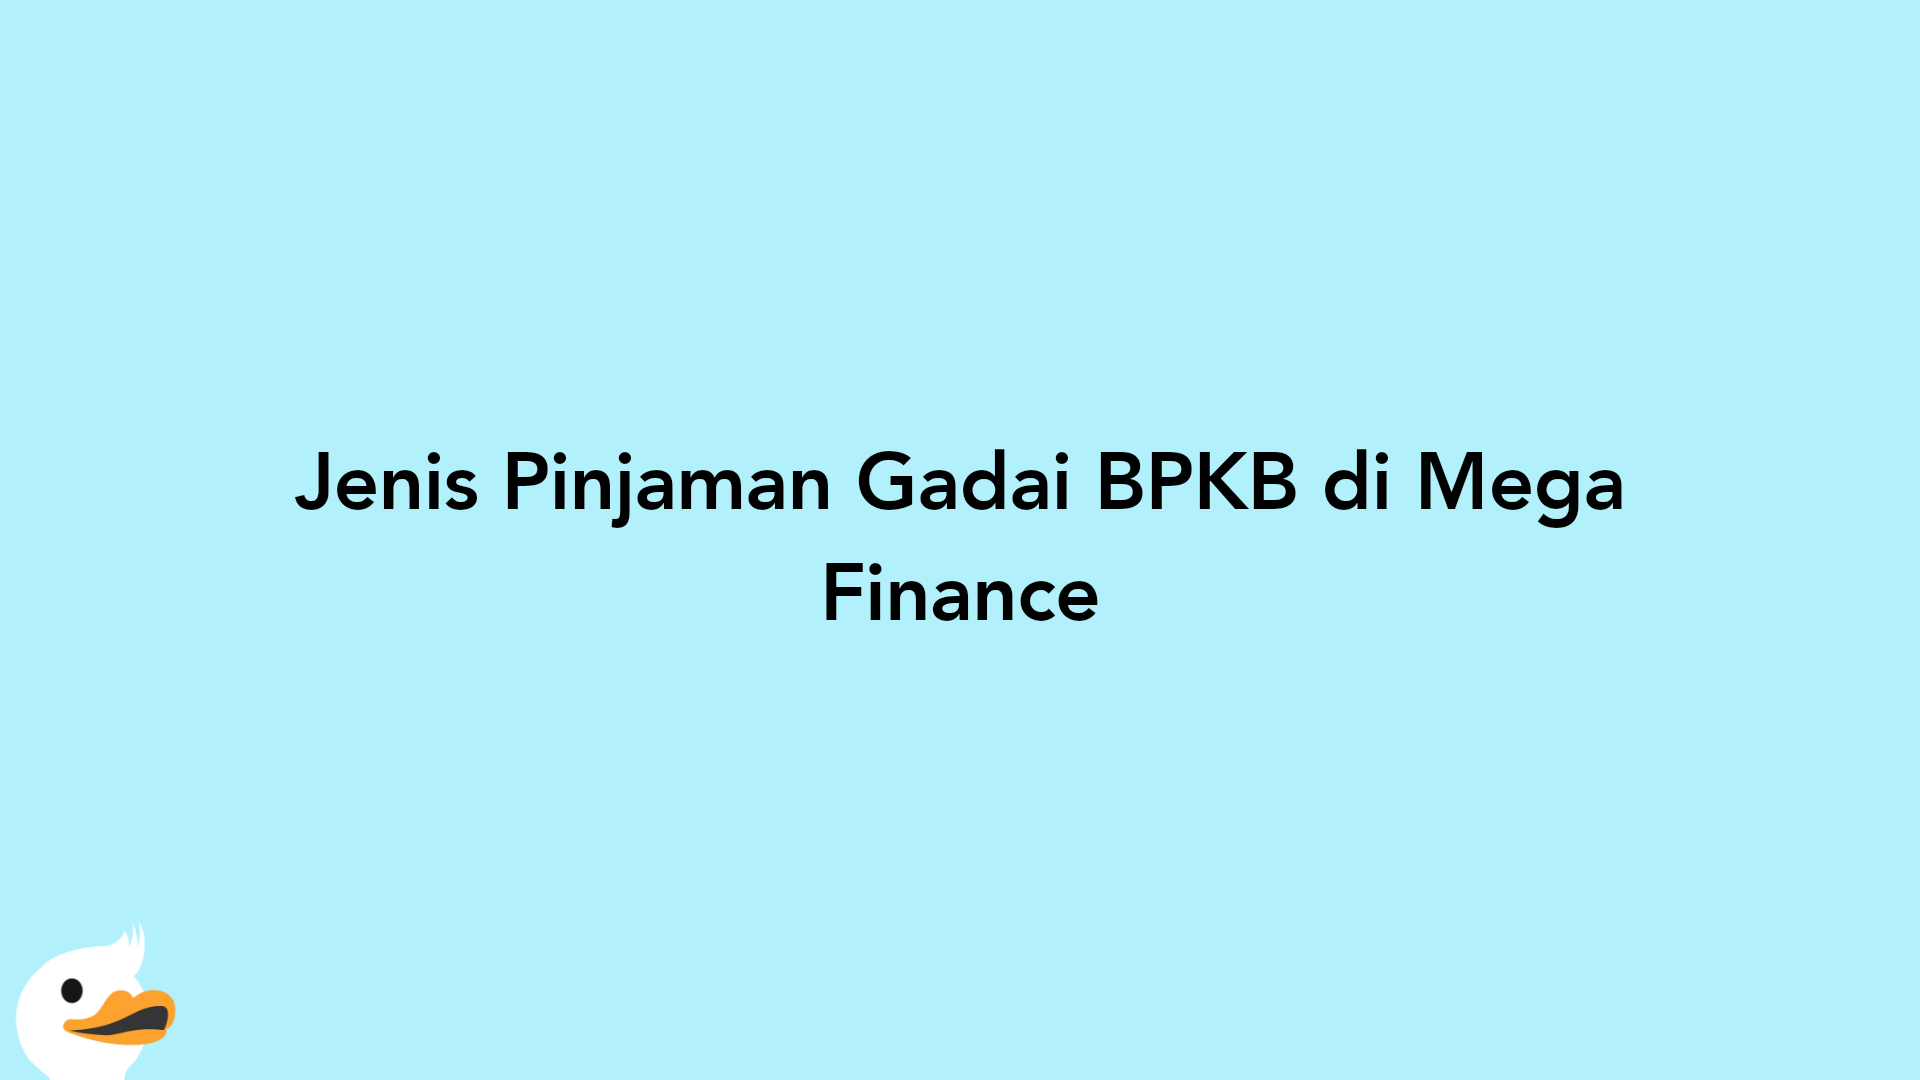 Jenis Pinjaman Gadai BPKB di Mega Finance